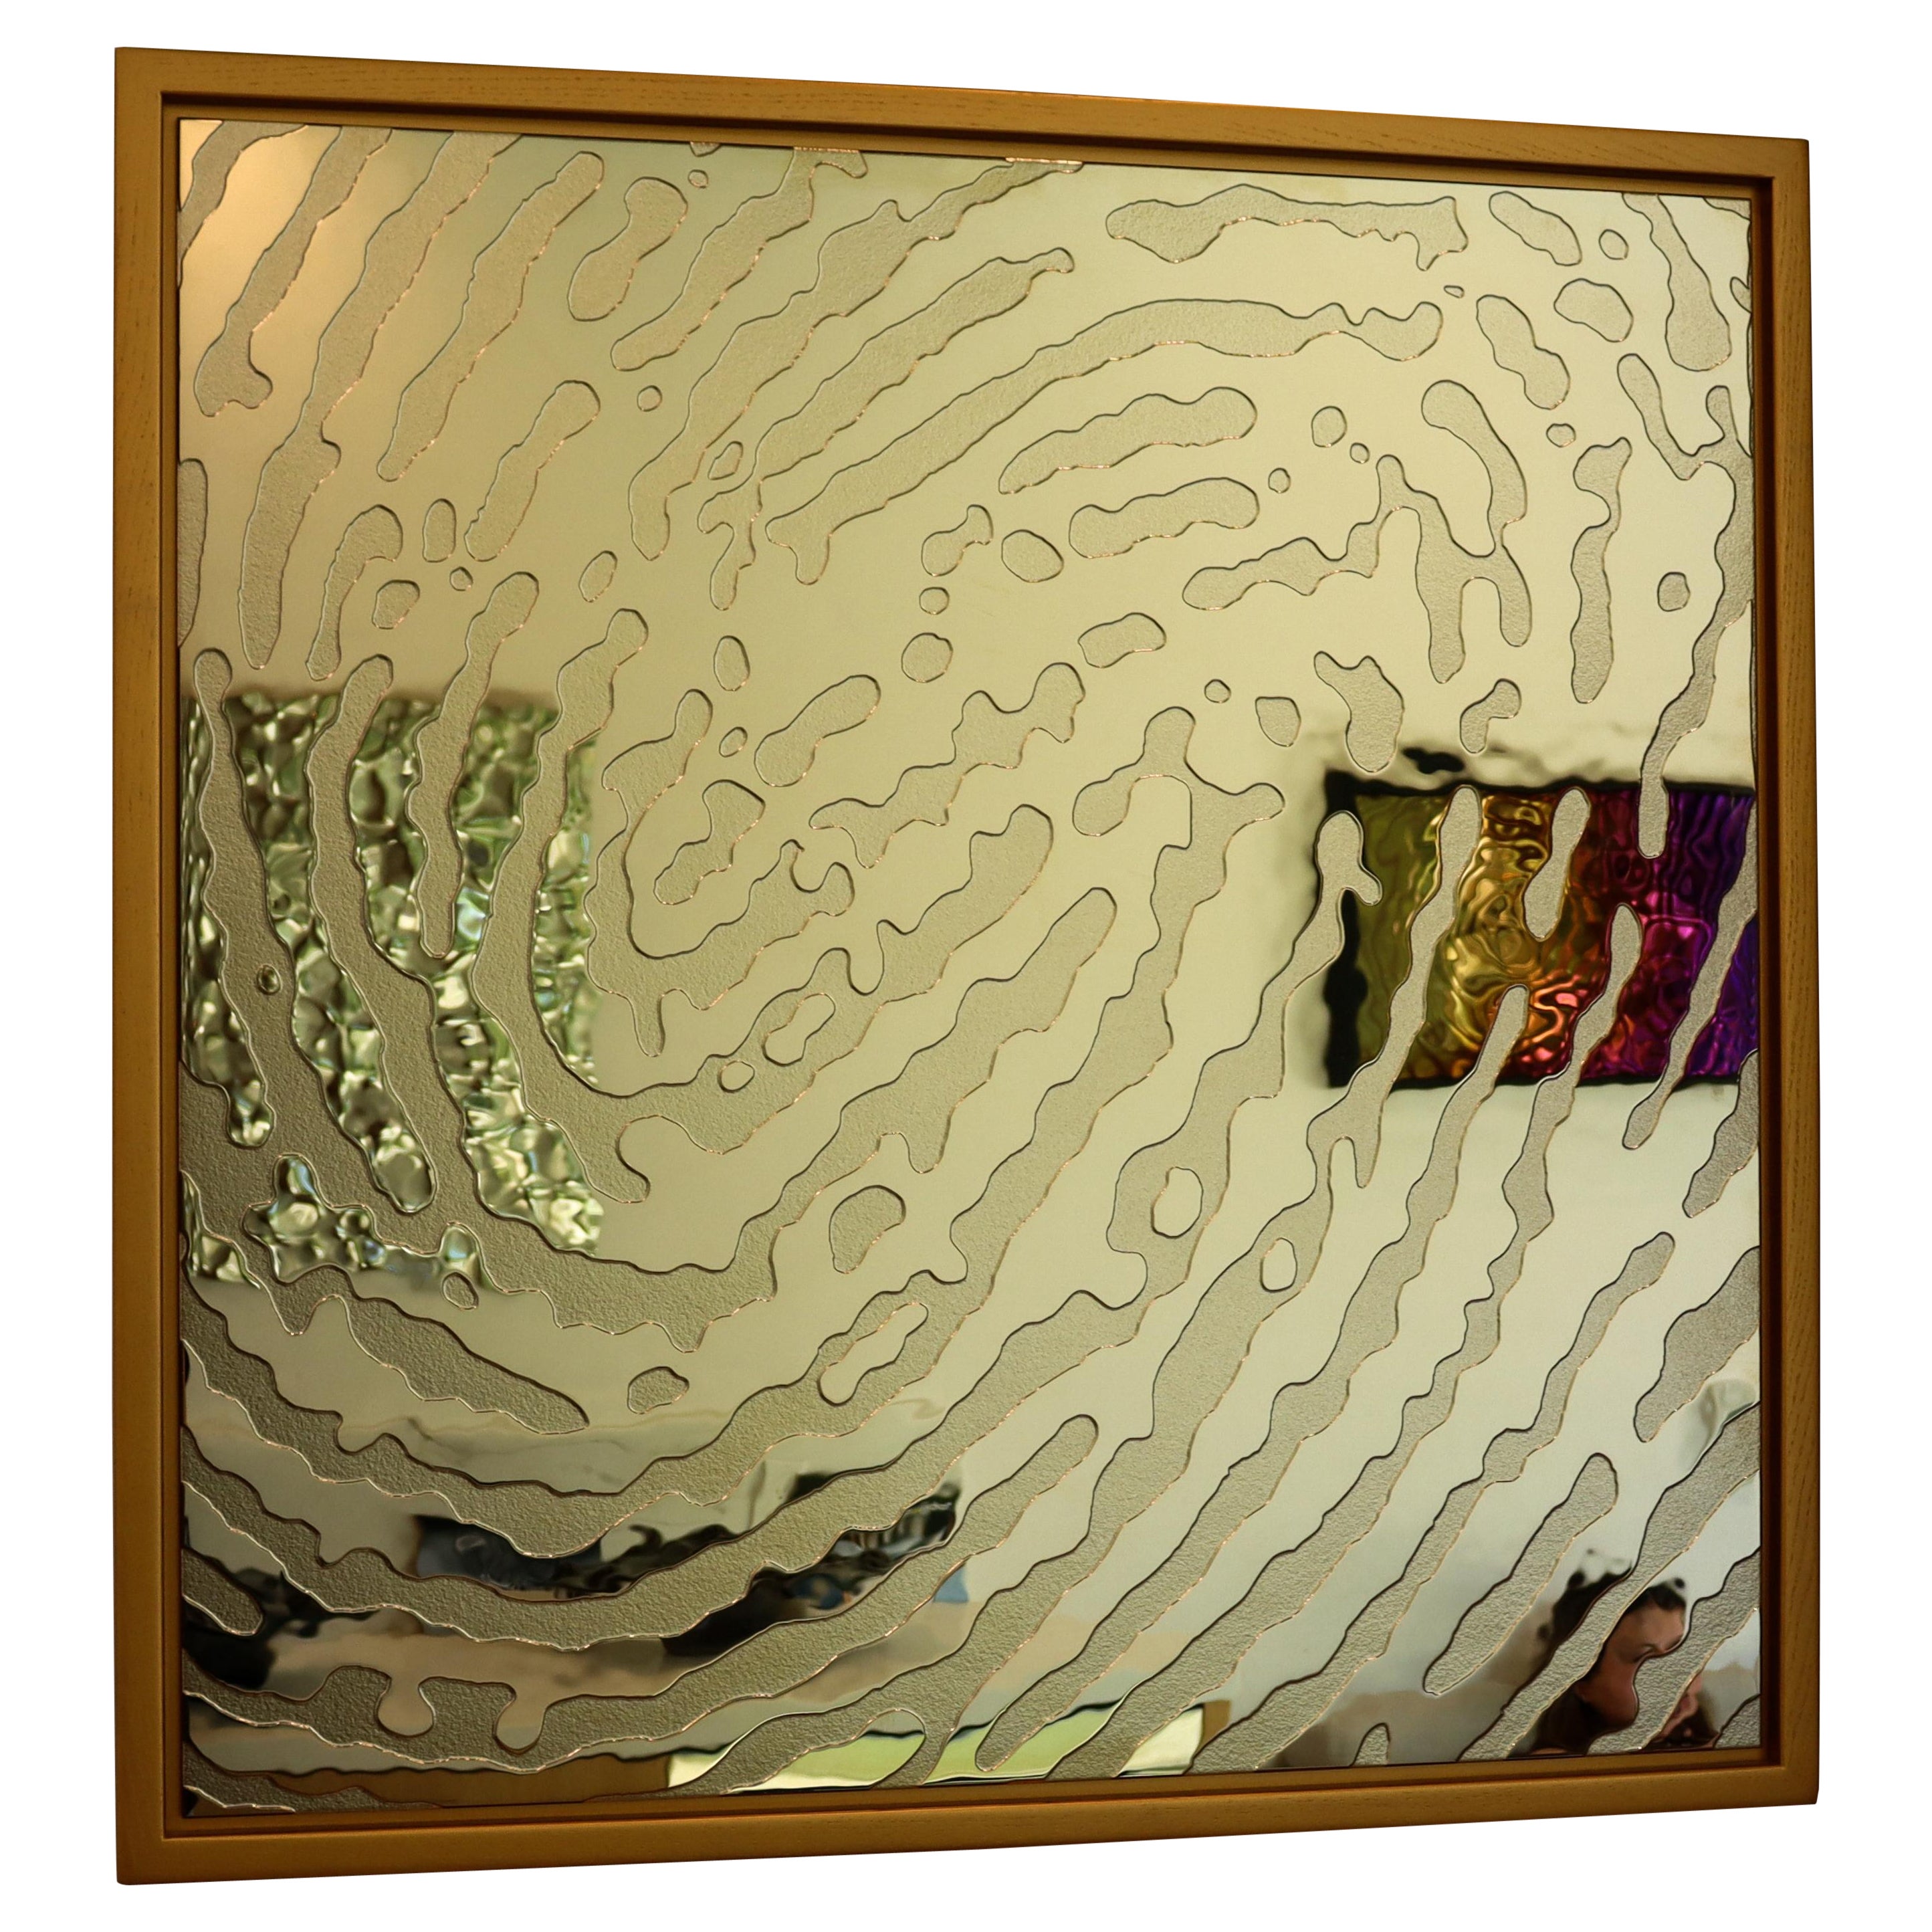 Plus Object Glass Panel "Fingerprint" Gold